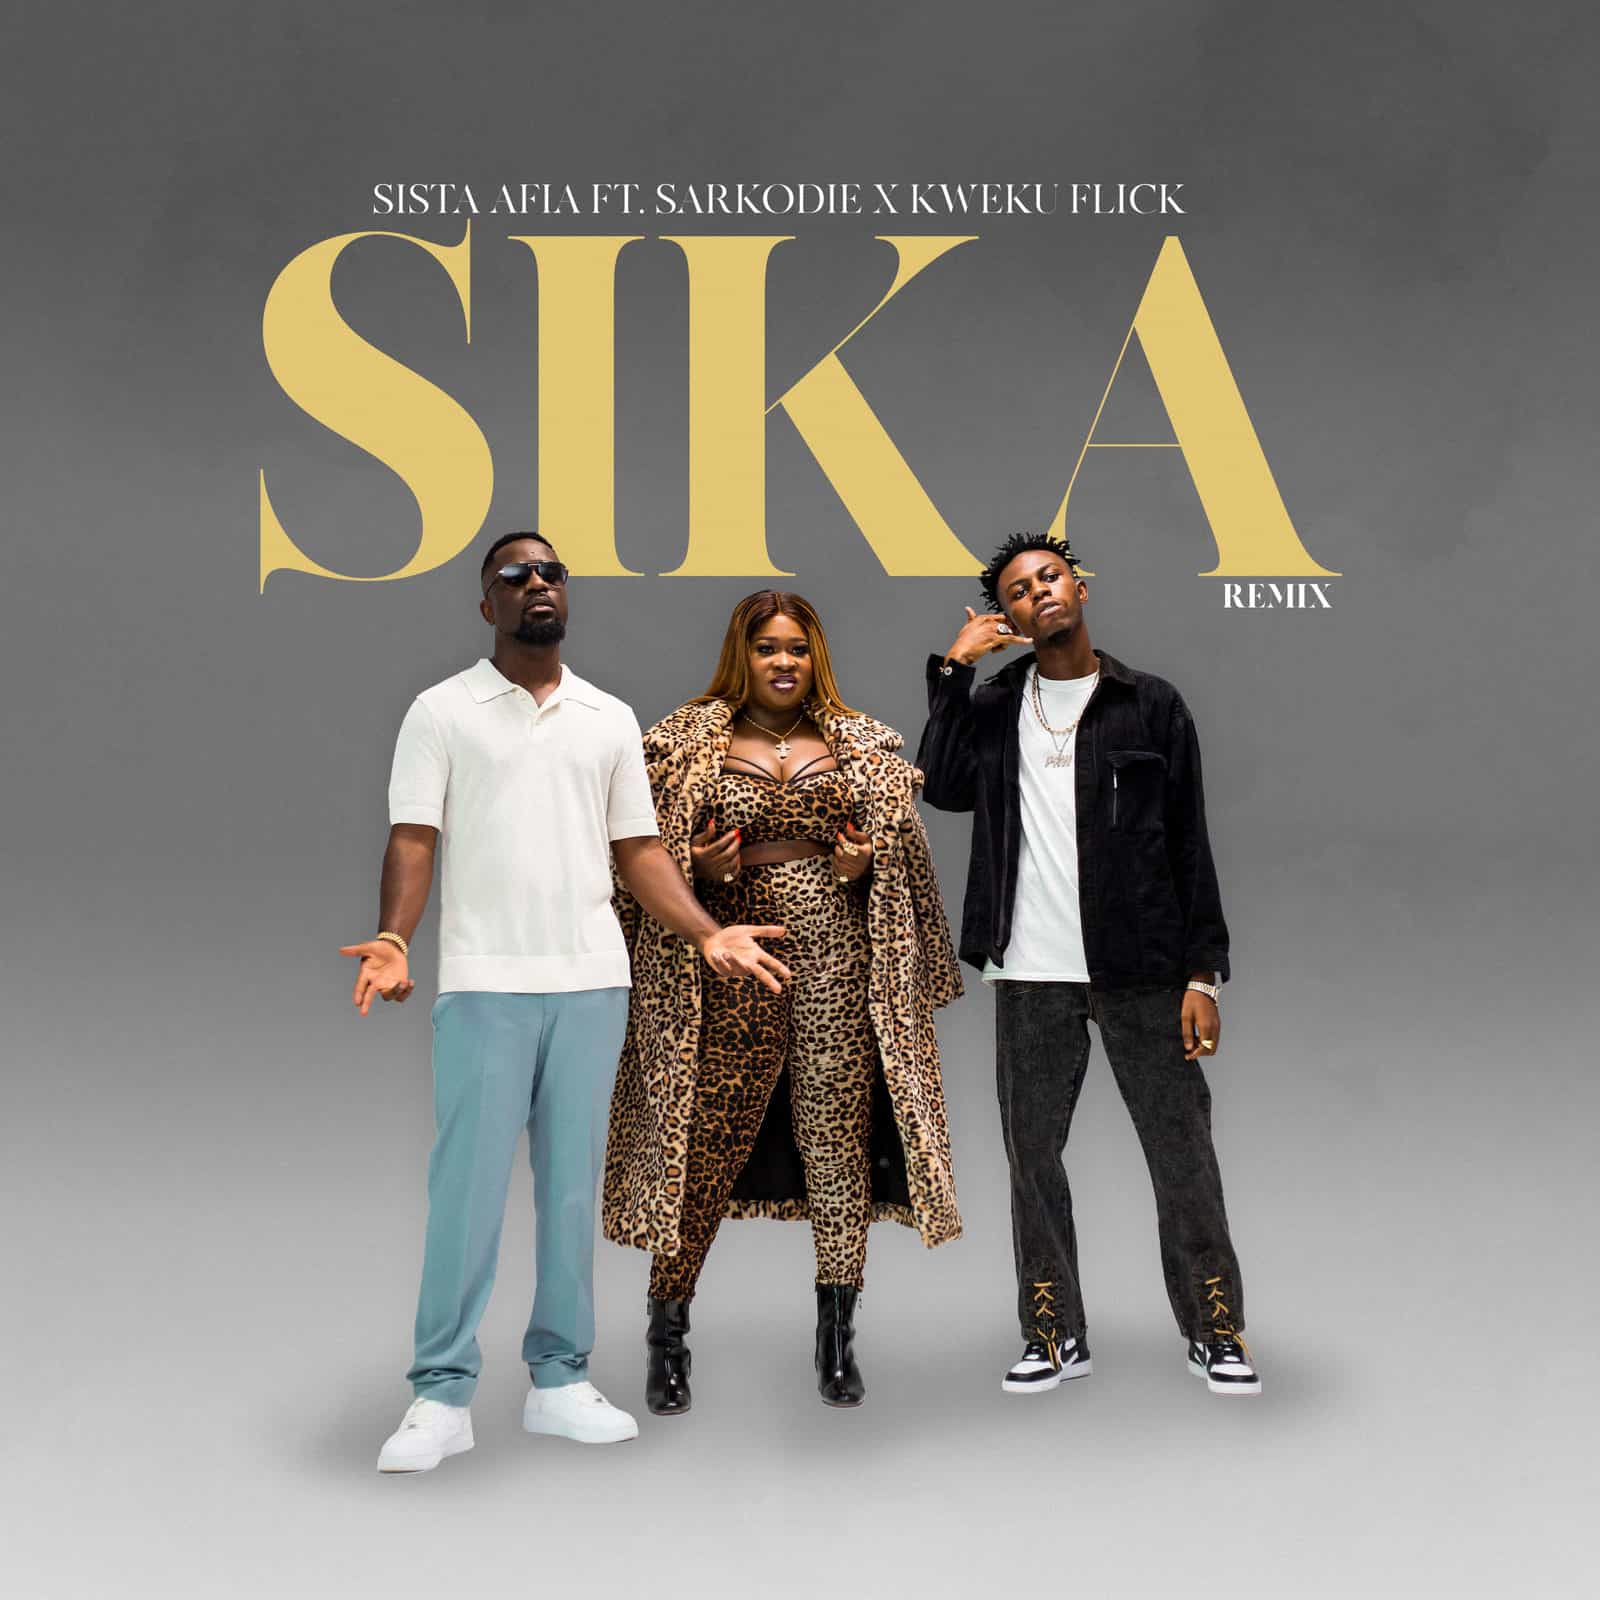 Sista Afia Featuring Saekodie & Kweku Flick - Sika Remix